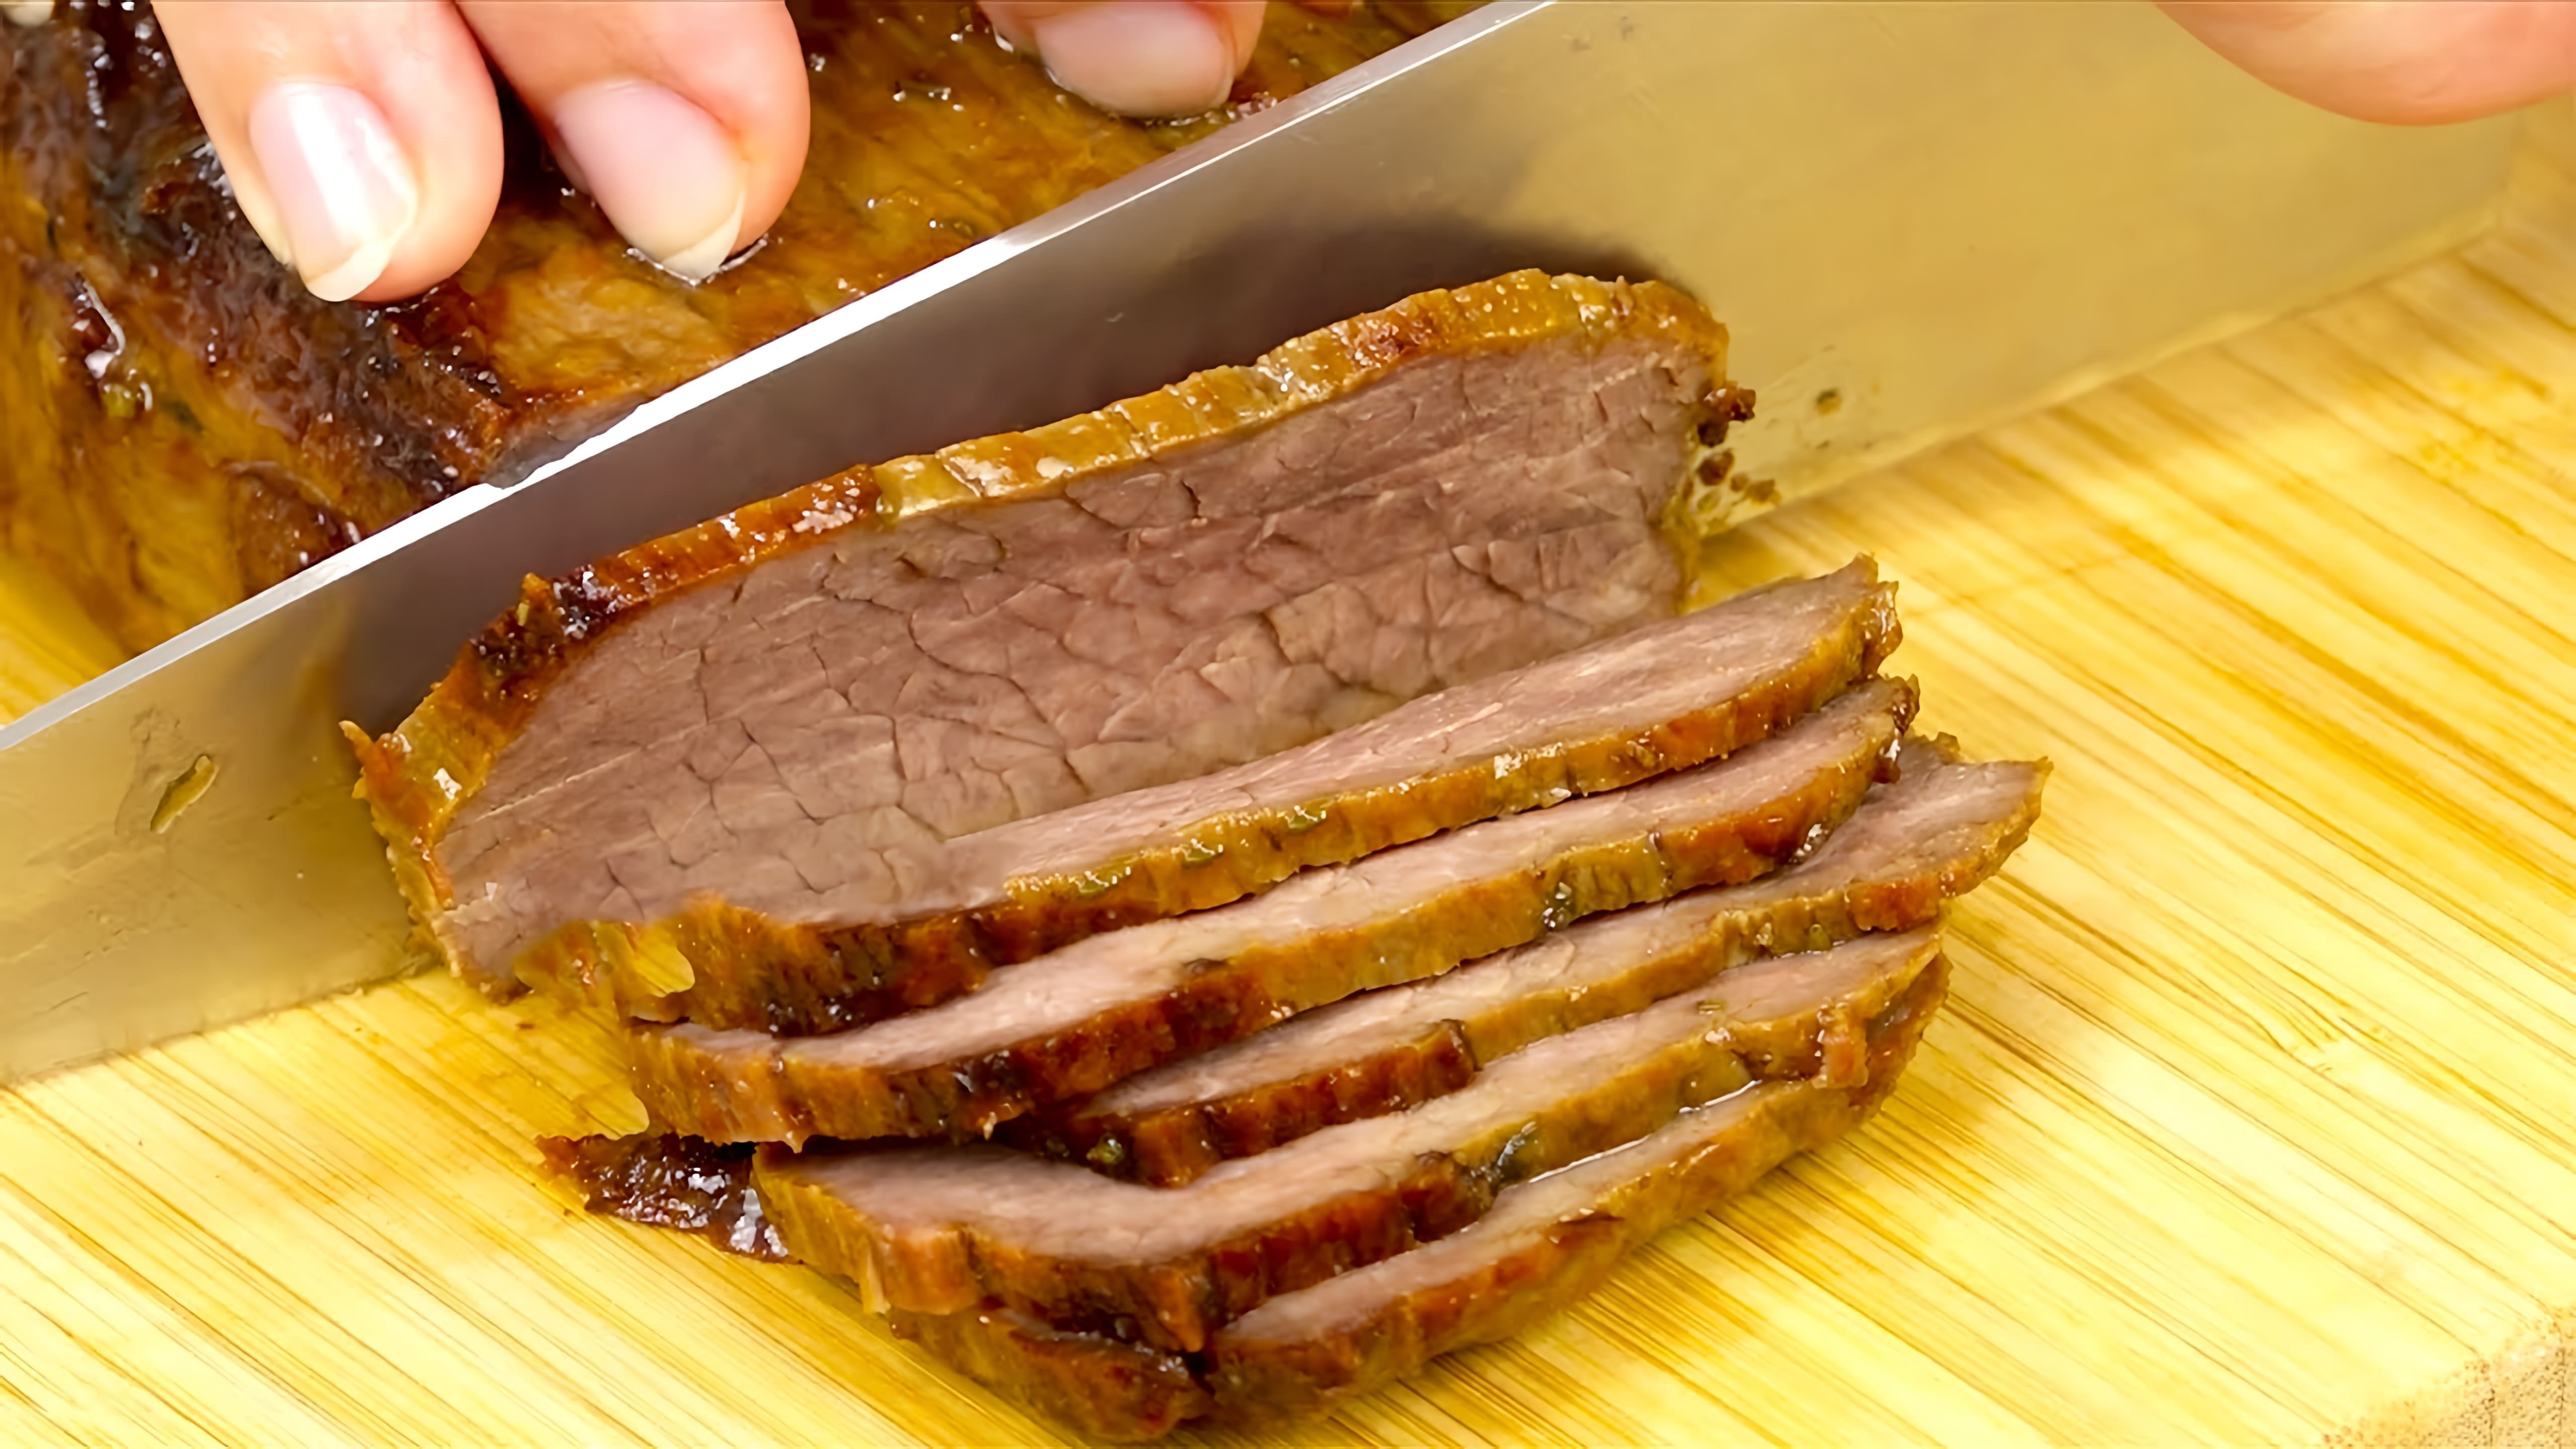 В этом видео показаны несколько рецептов приготовления мяса, которые можно использовать вместо колбасы